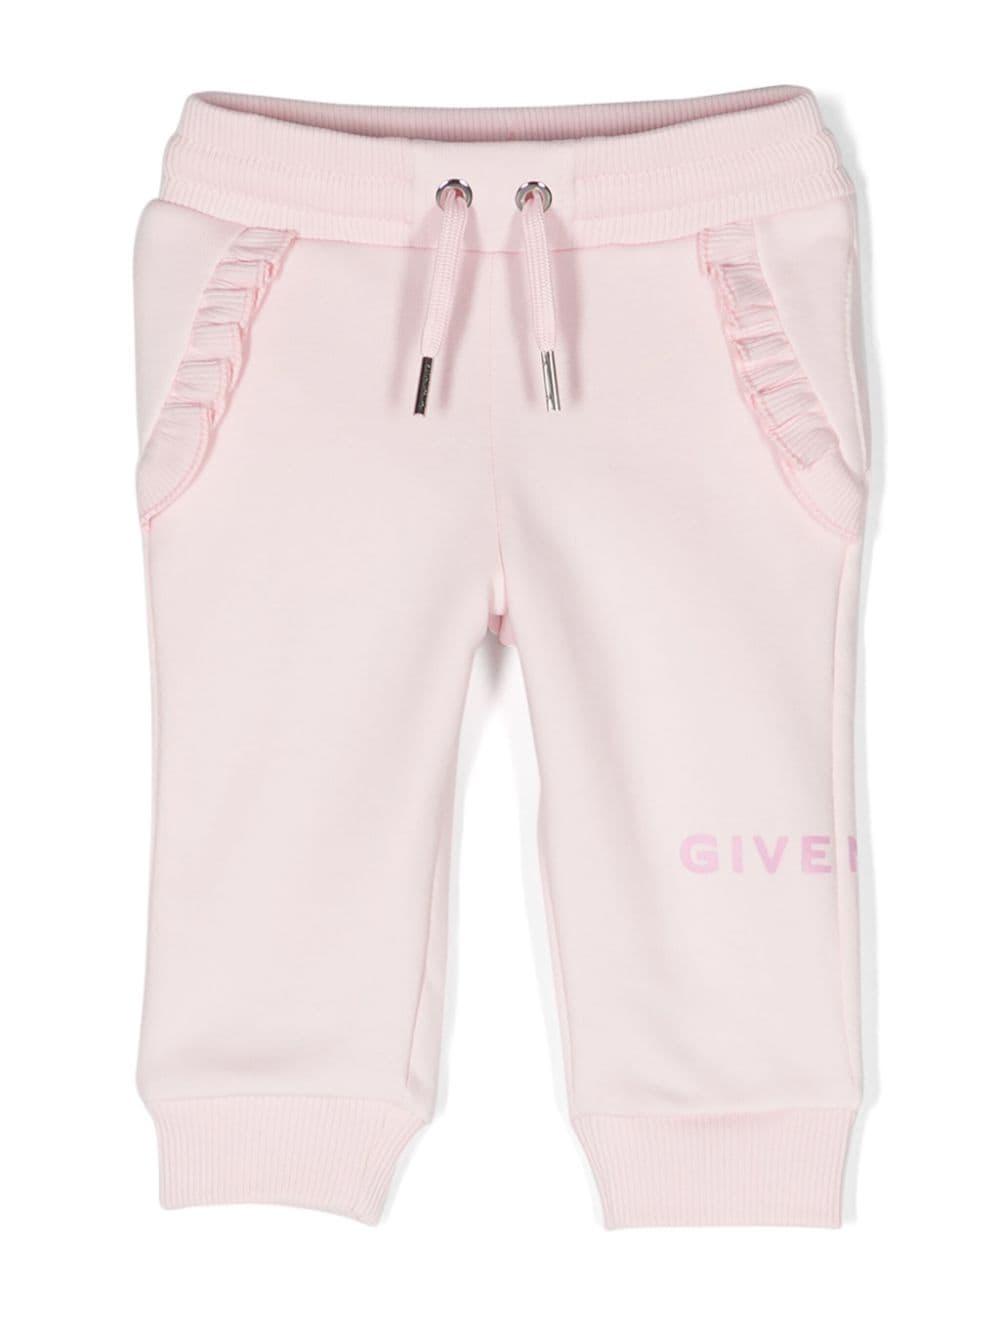 Pantalon bébé fille rose